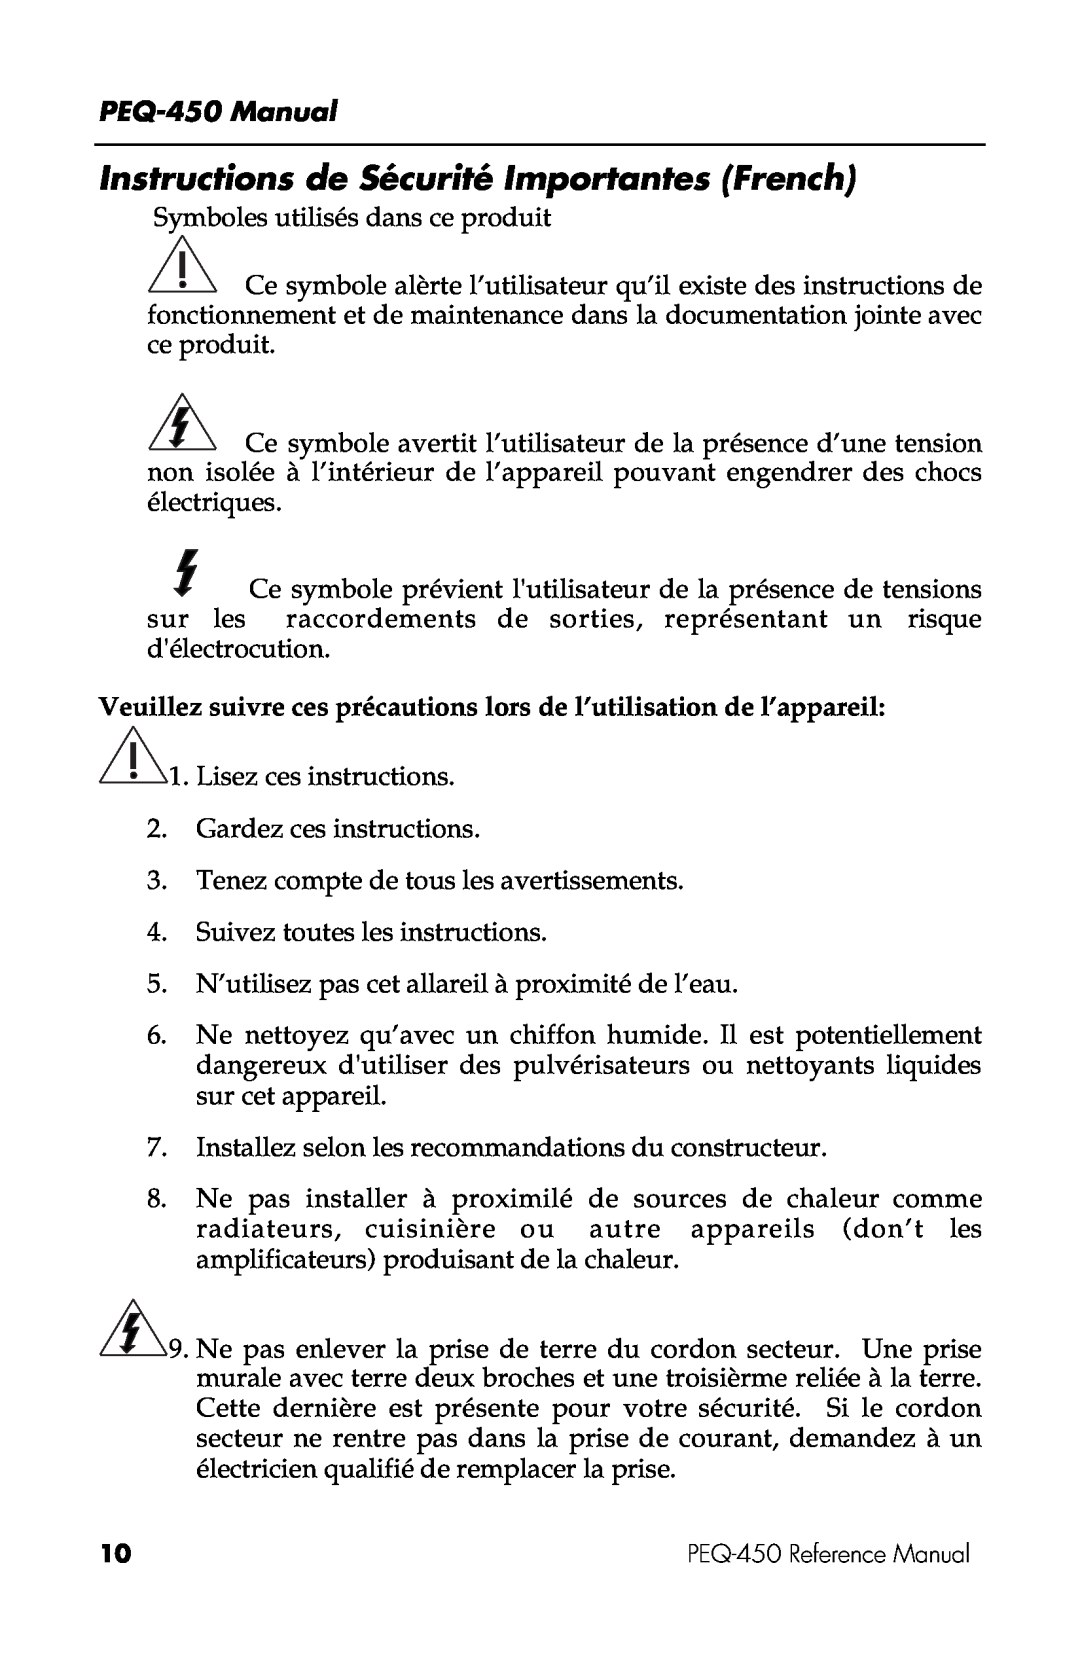 Alesis PEQ-450 manual Instructions de Sécurité Importantes French 